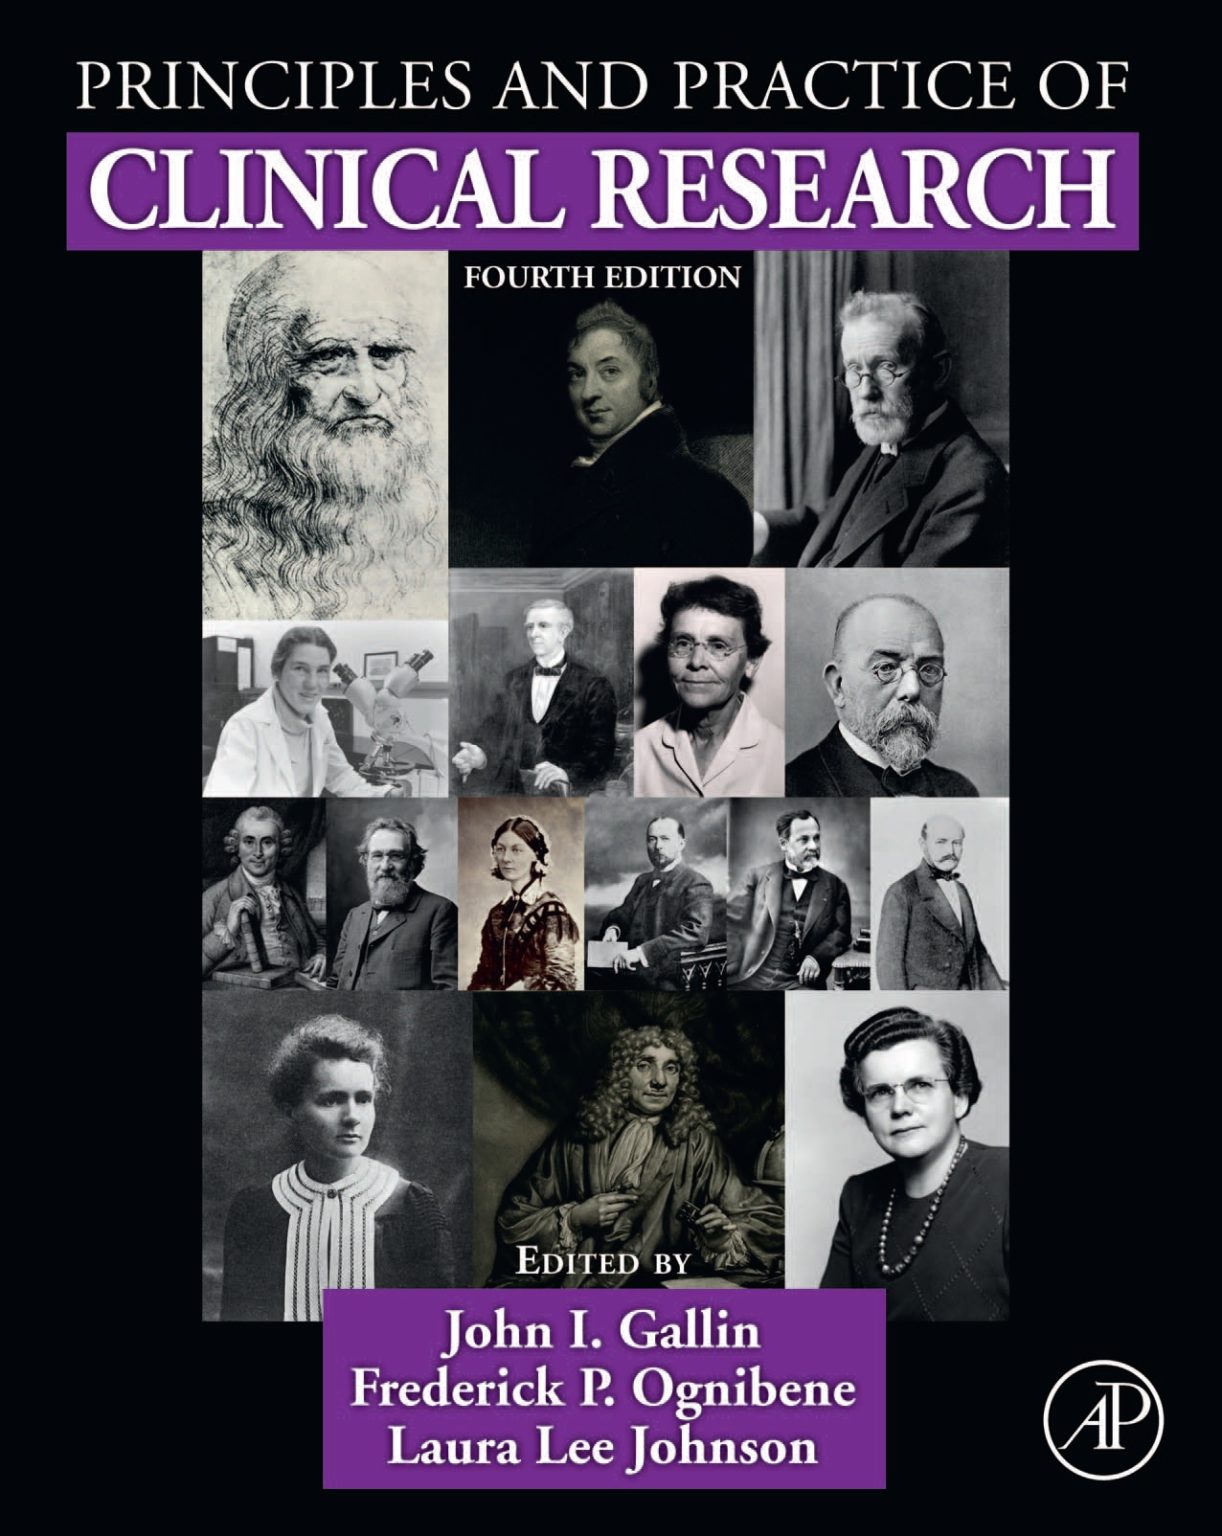 clinical research graduate scheme